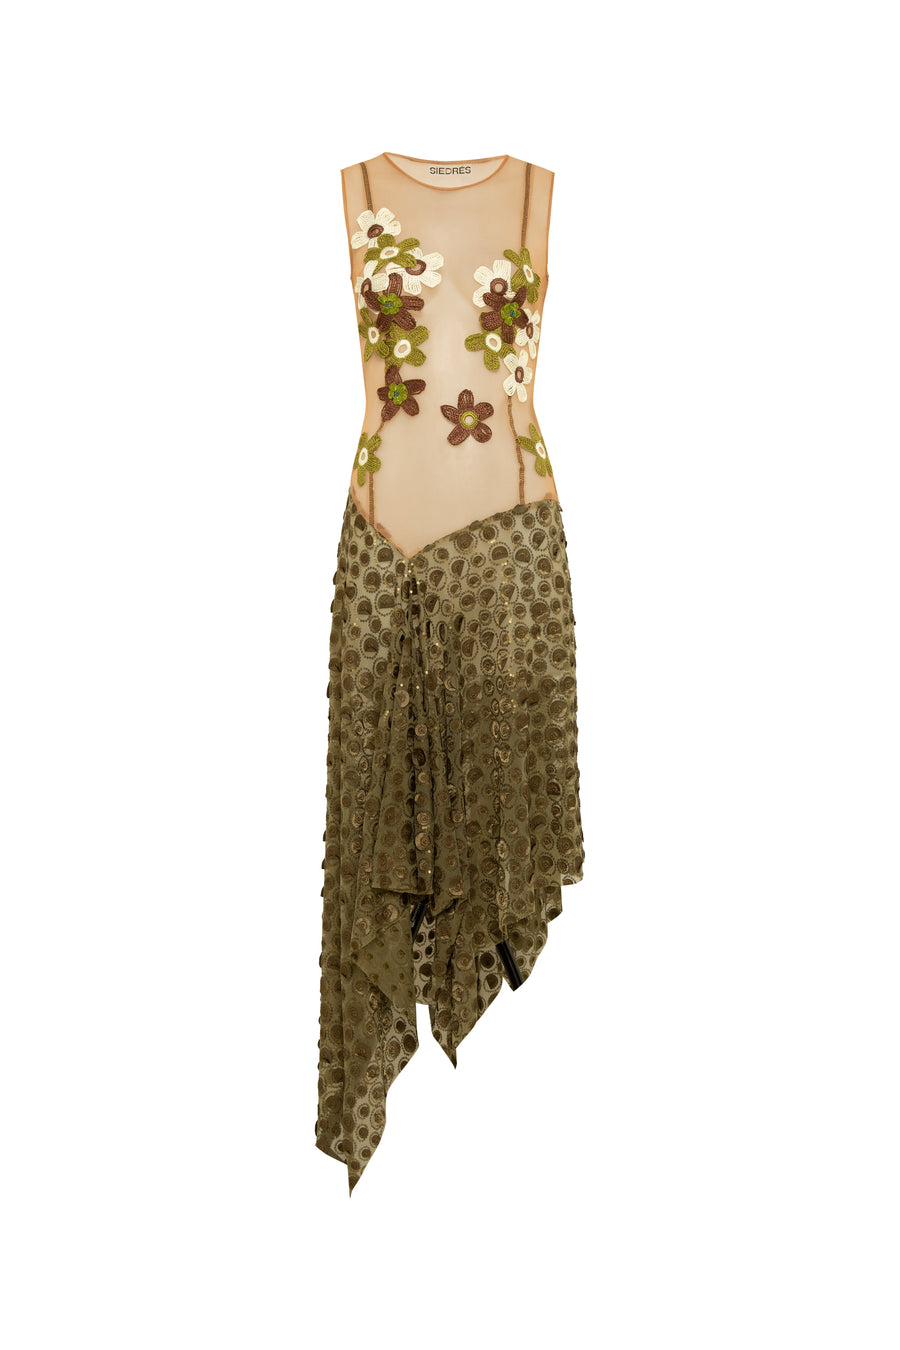 OVI - Handkerchief dress with crochet flower details